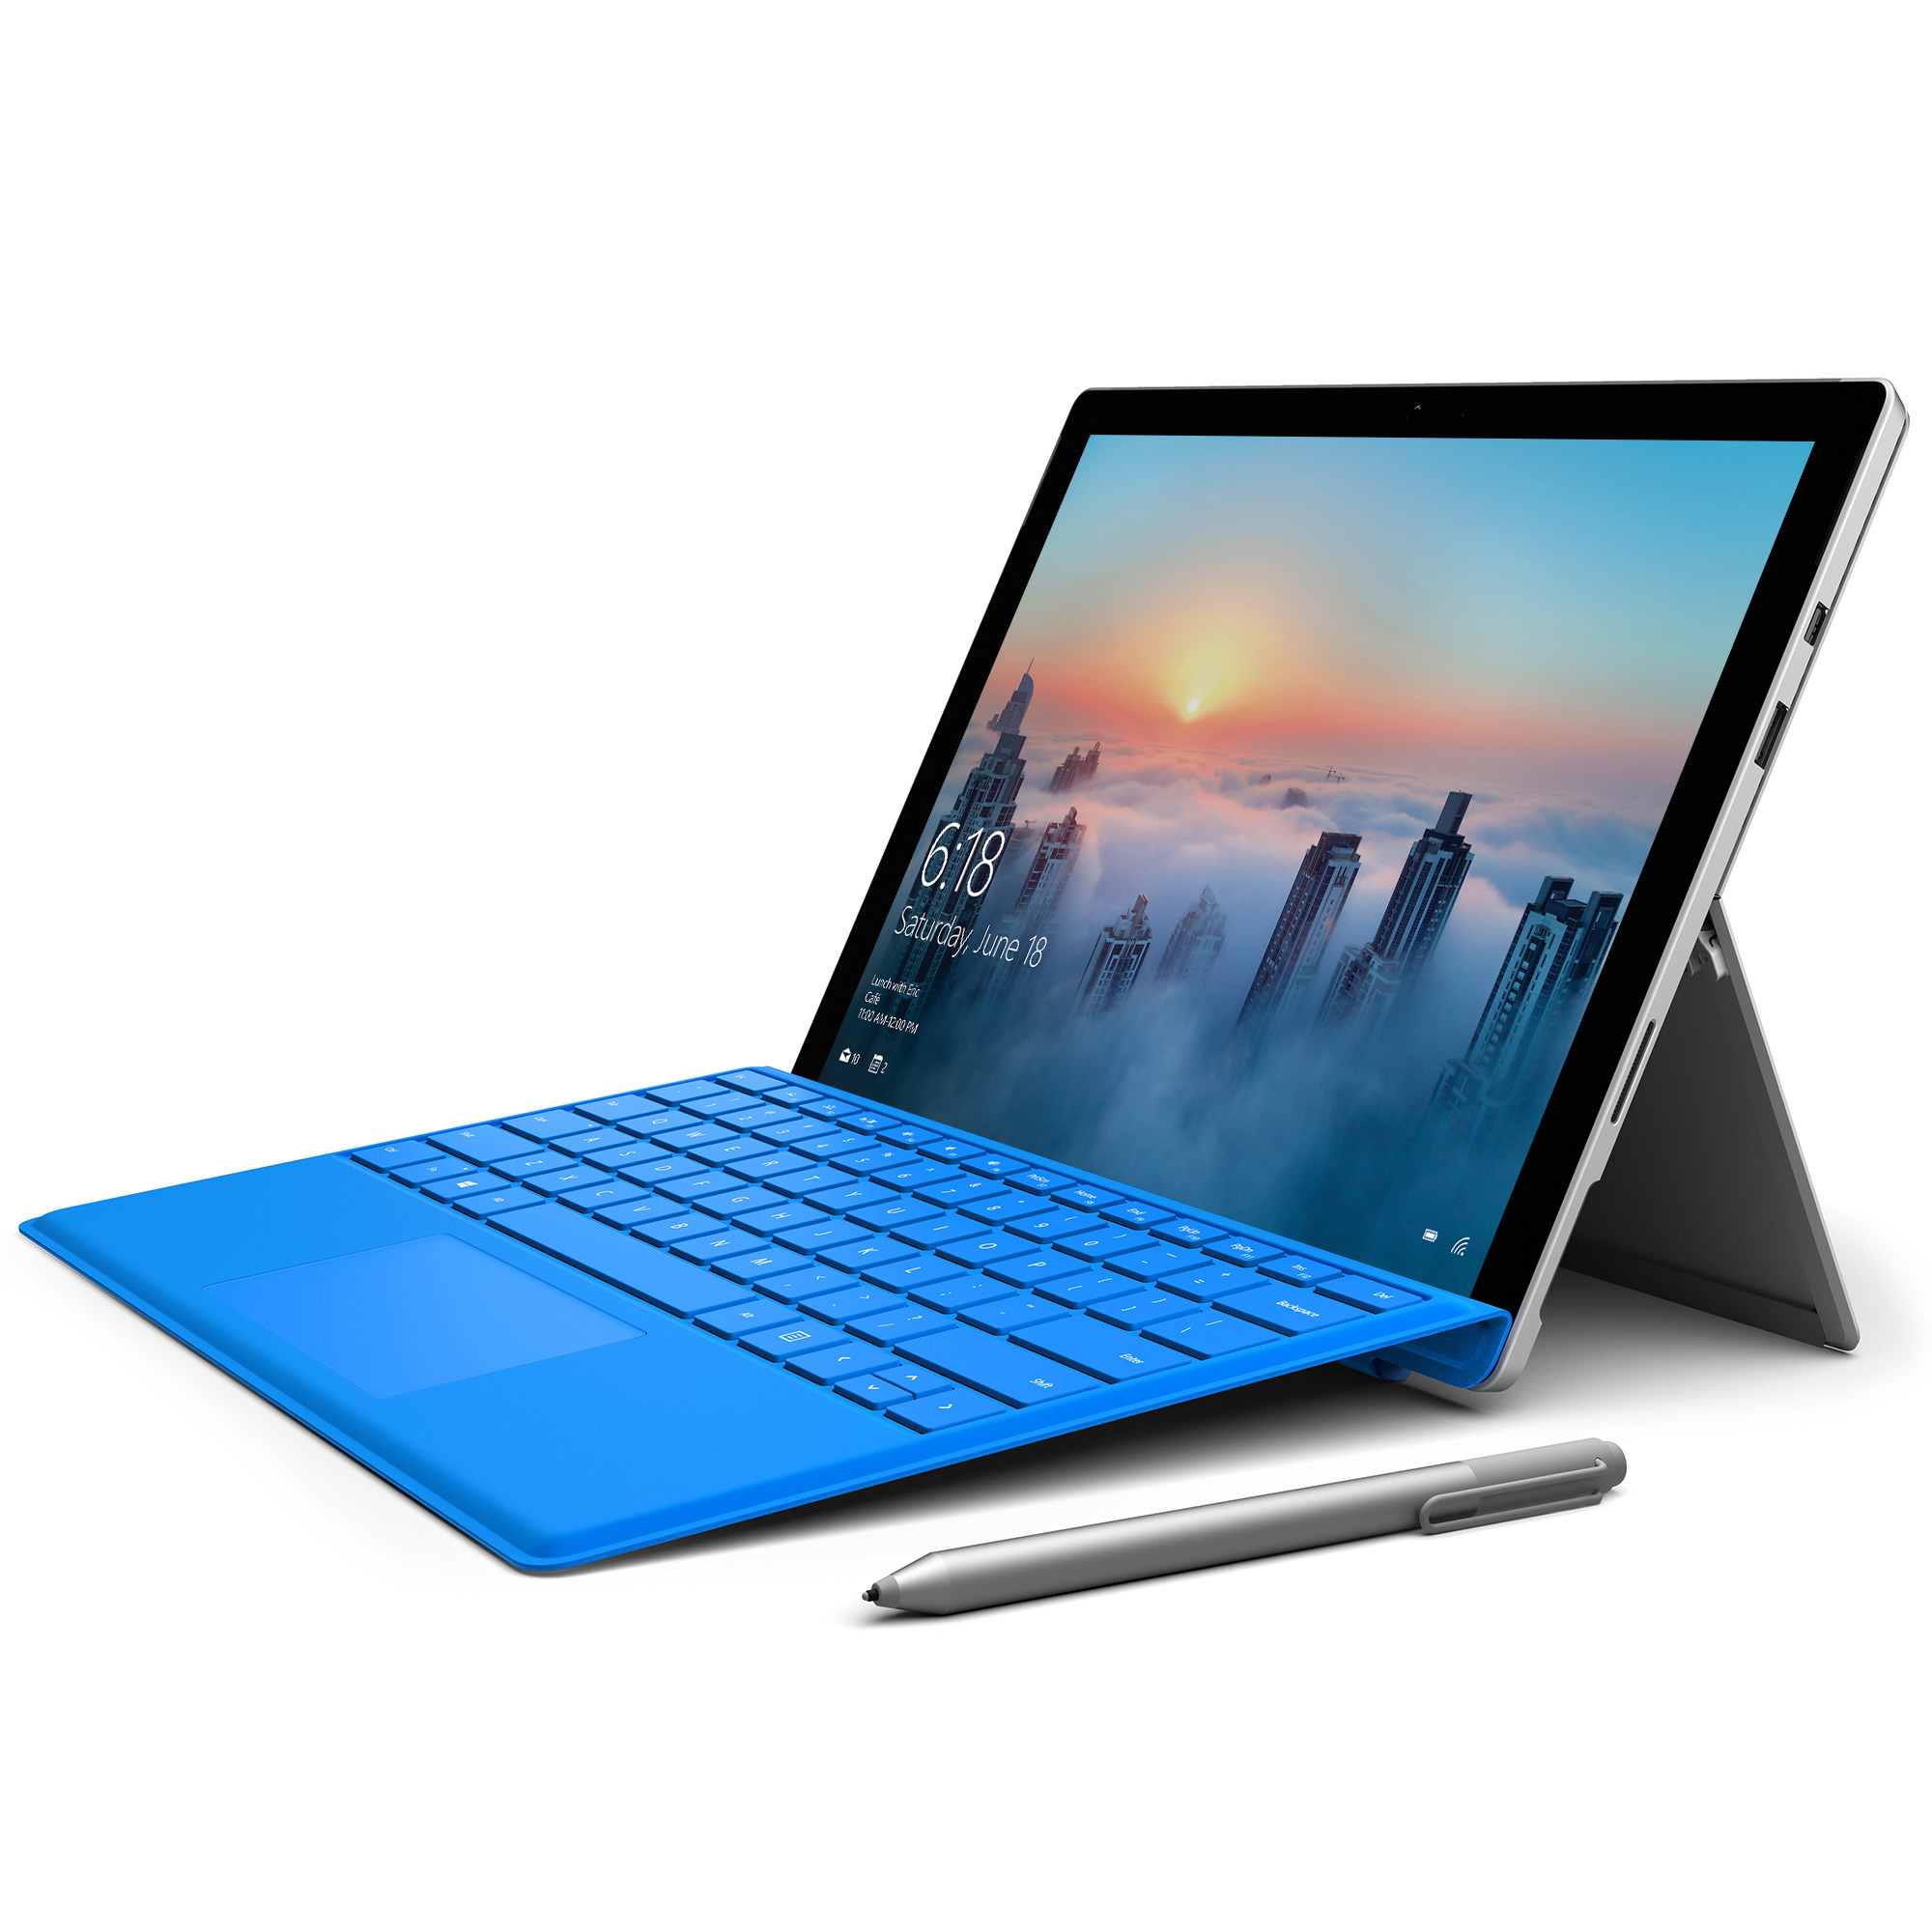 لپ تاپ سرفیس پرو 4 - Microsoft Surface Pro 4